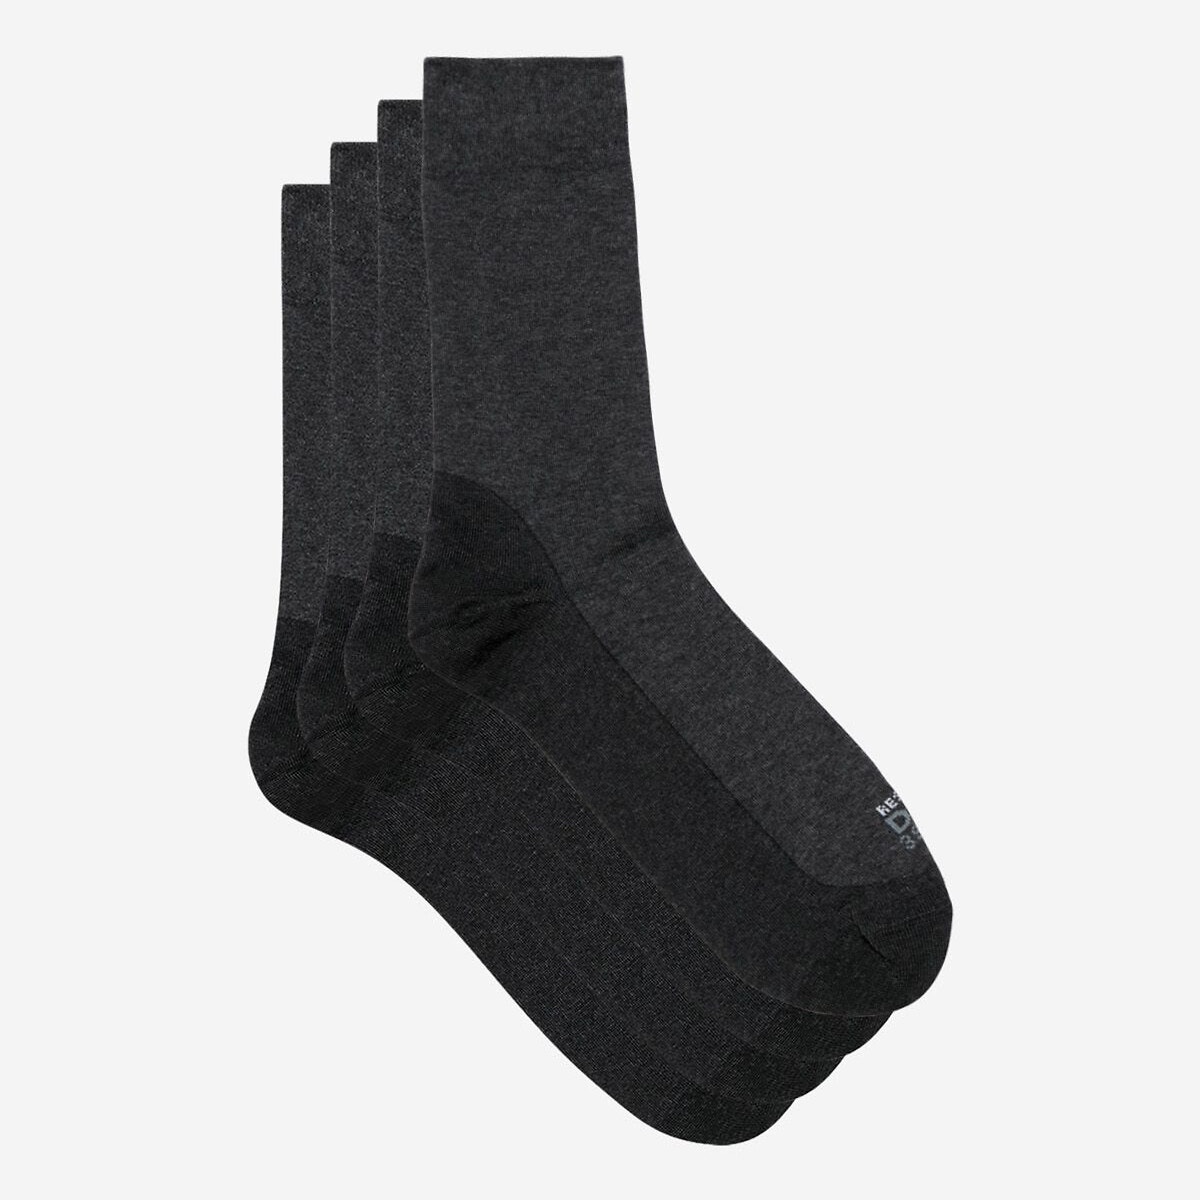 Σετ 2 ζευγάρια ανθεκτικές κάλτσες